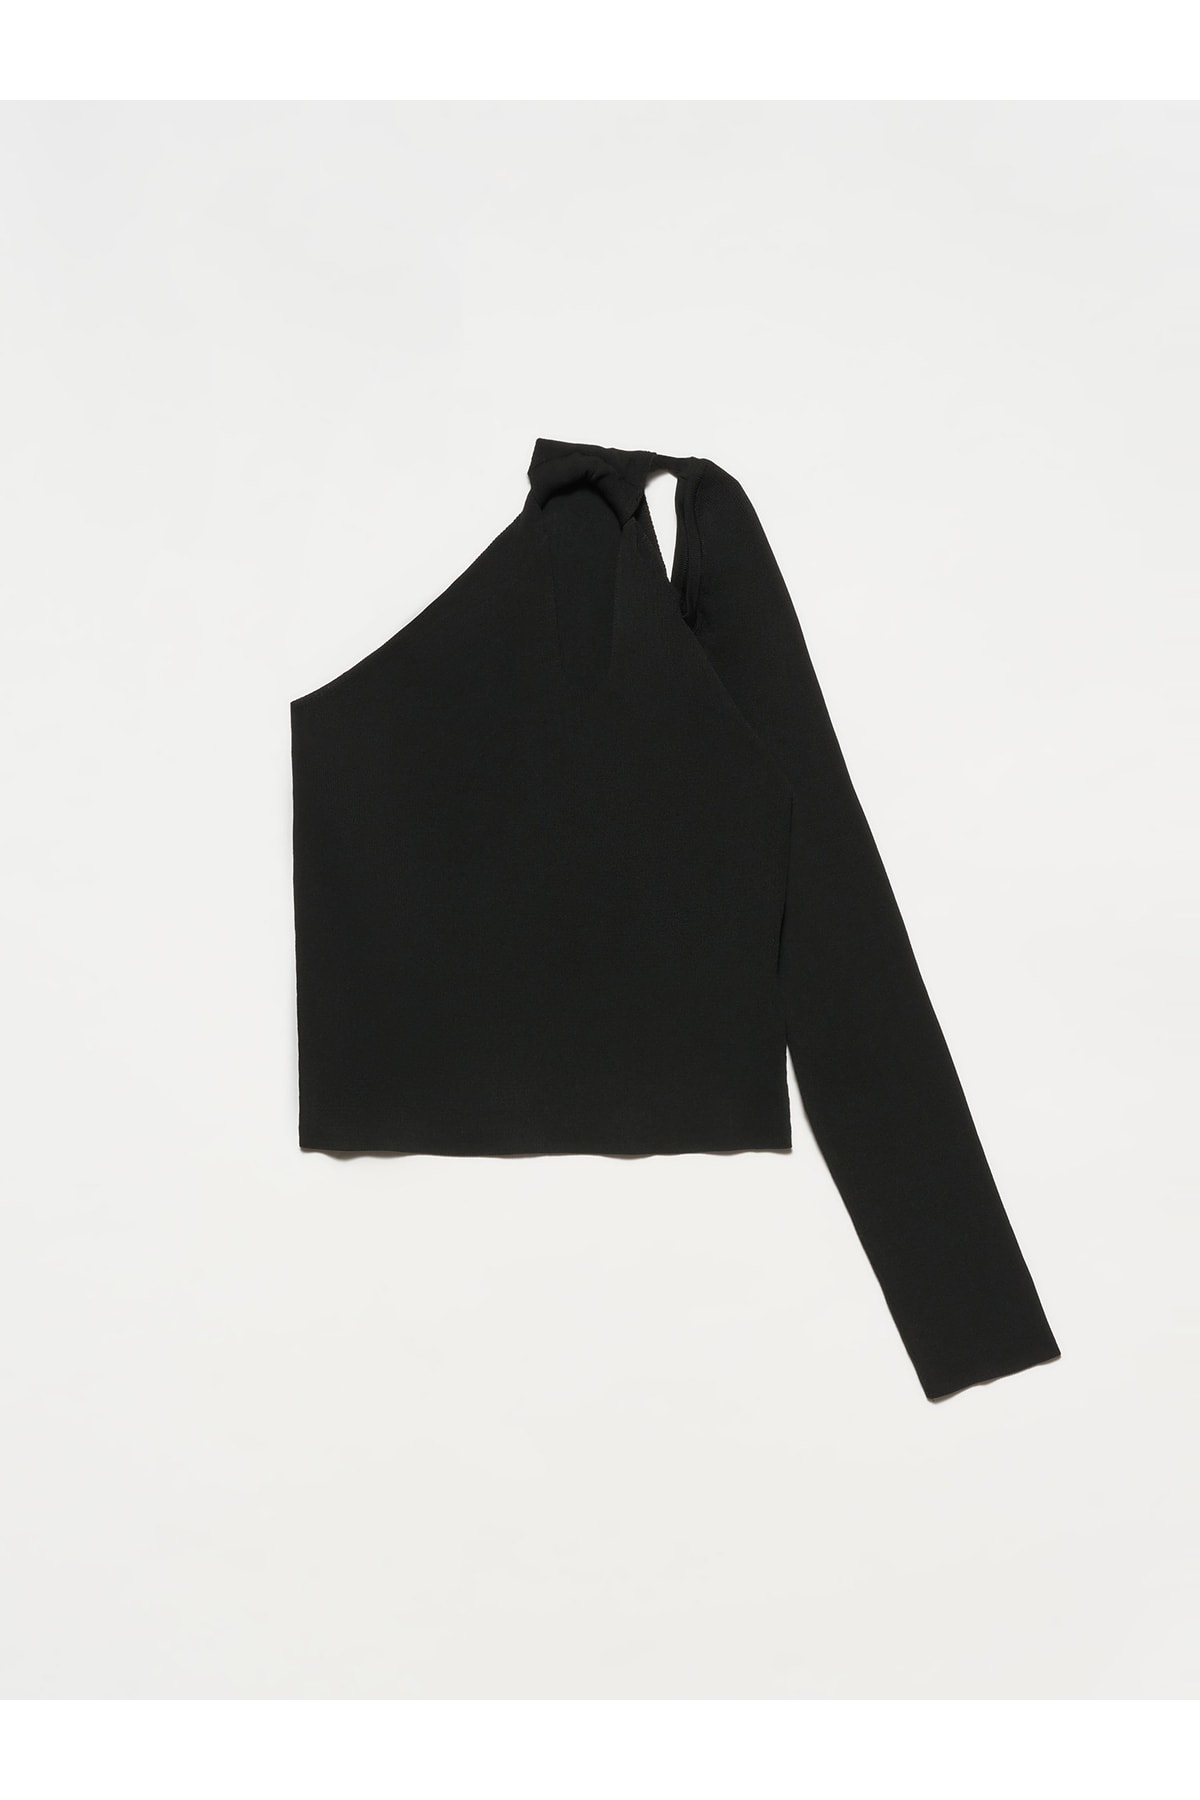 Dilvin 10328 Pravé rameno otvorené sveter s jedným rukávom čierny